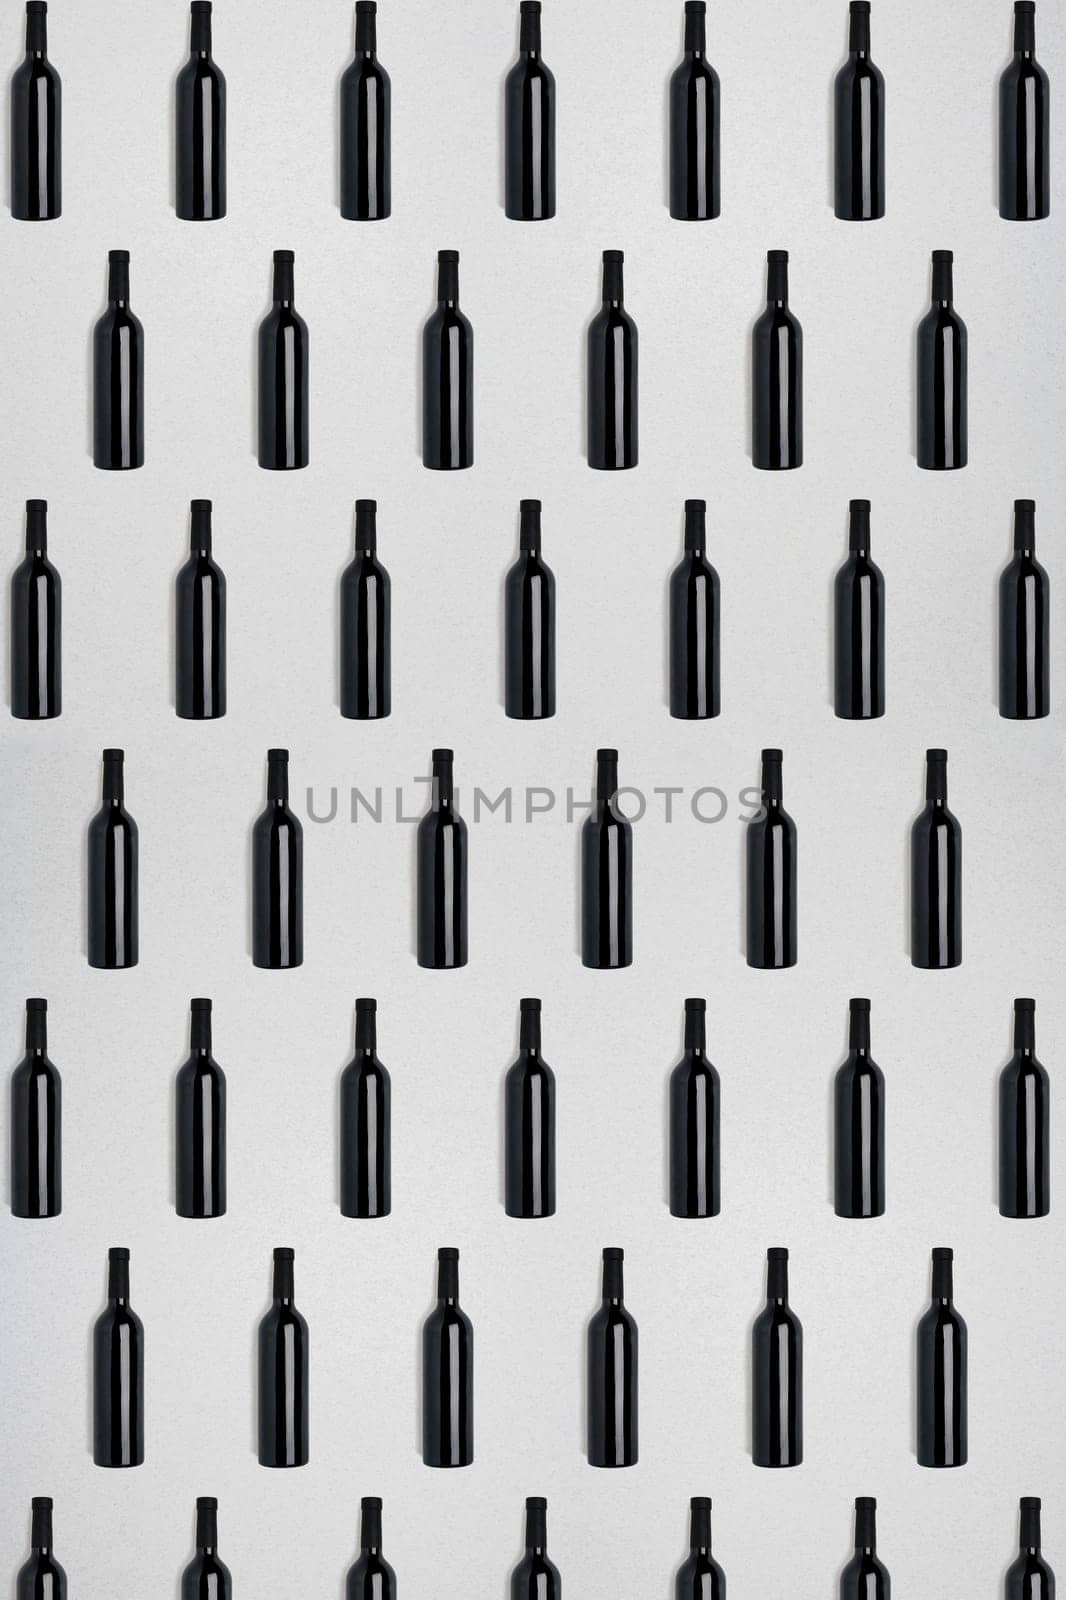 Dark wine bottles. Creative dark and textured abstract background. by nazarovsergey